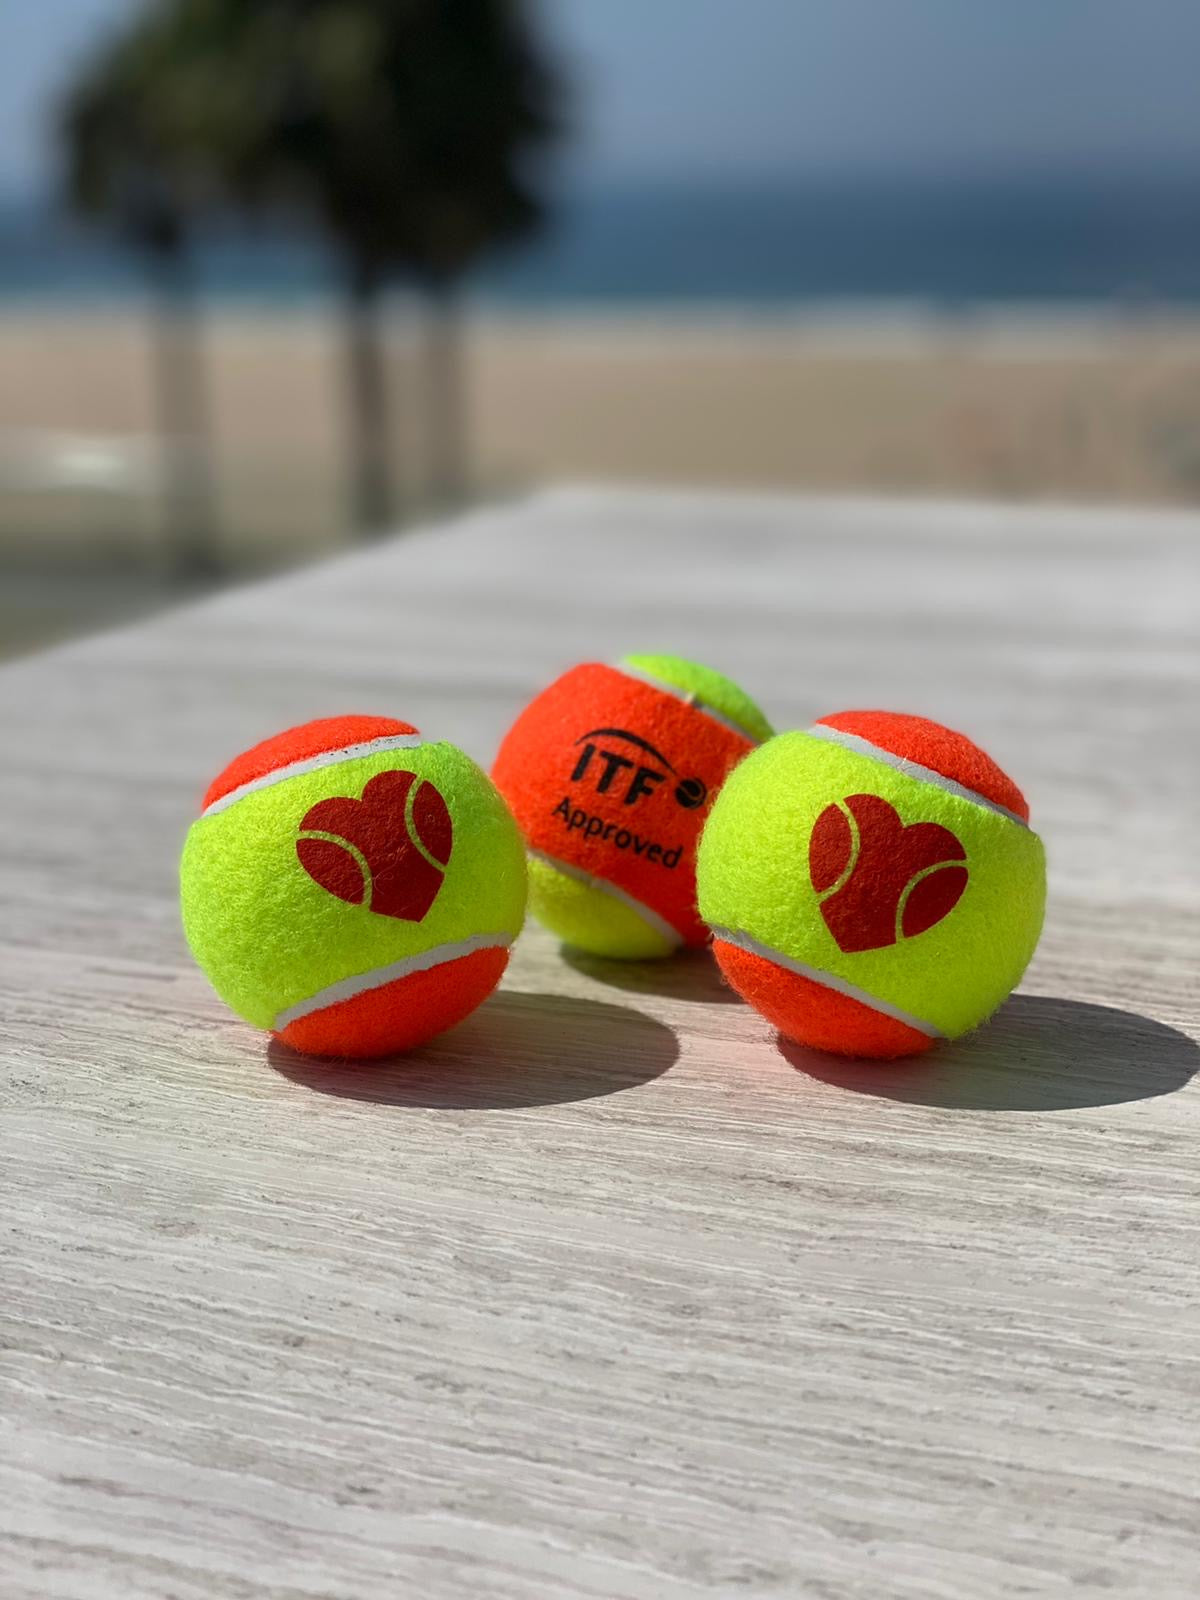 I ❤️ BT Beach Tennis Ball - ITF APPROVED